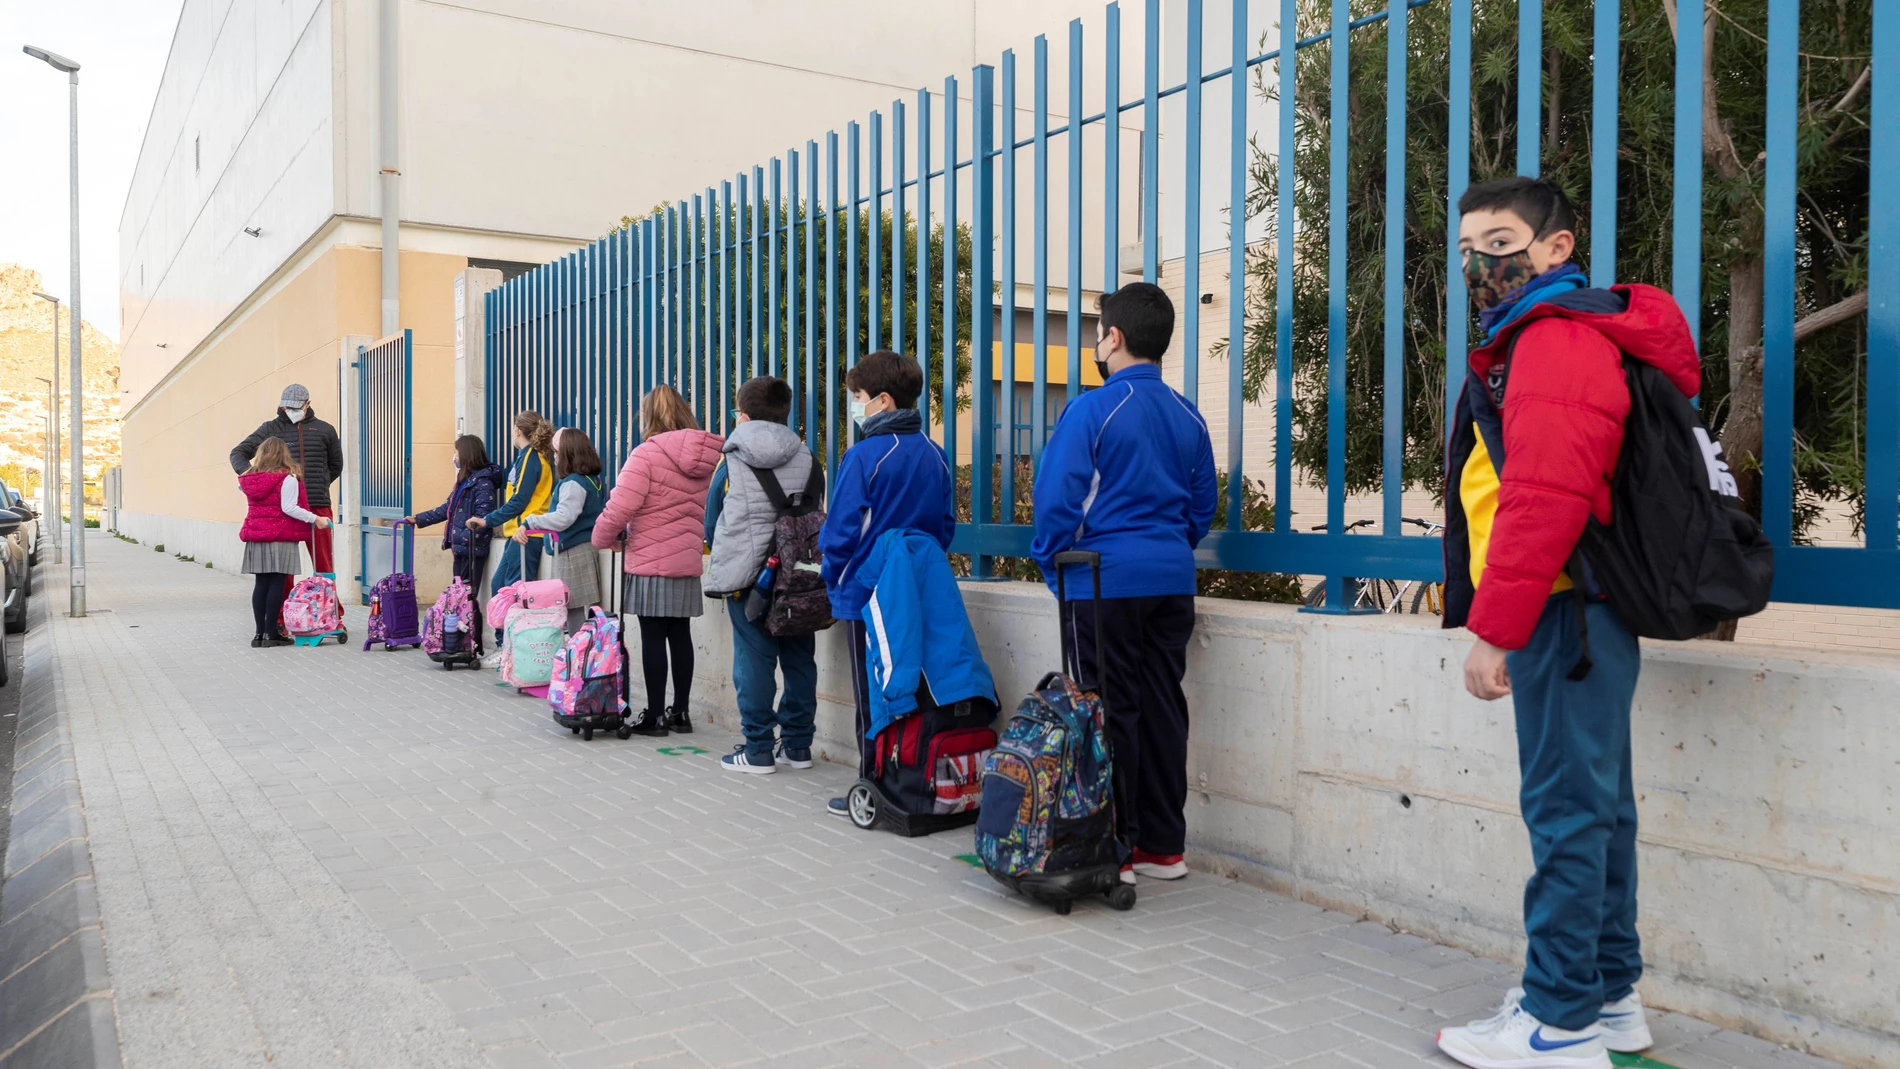 Alumnos del Instituto de Educación Secundaria Vivente Medina de Archena, Murcia, se someten a test de antígenos, este lunes, en el primer día de clase tras las vacaciones de Navidad.